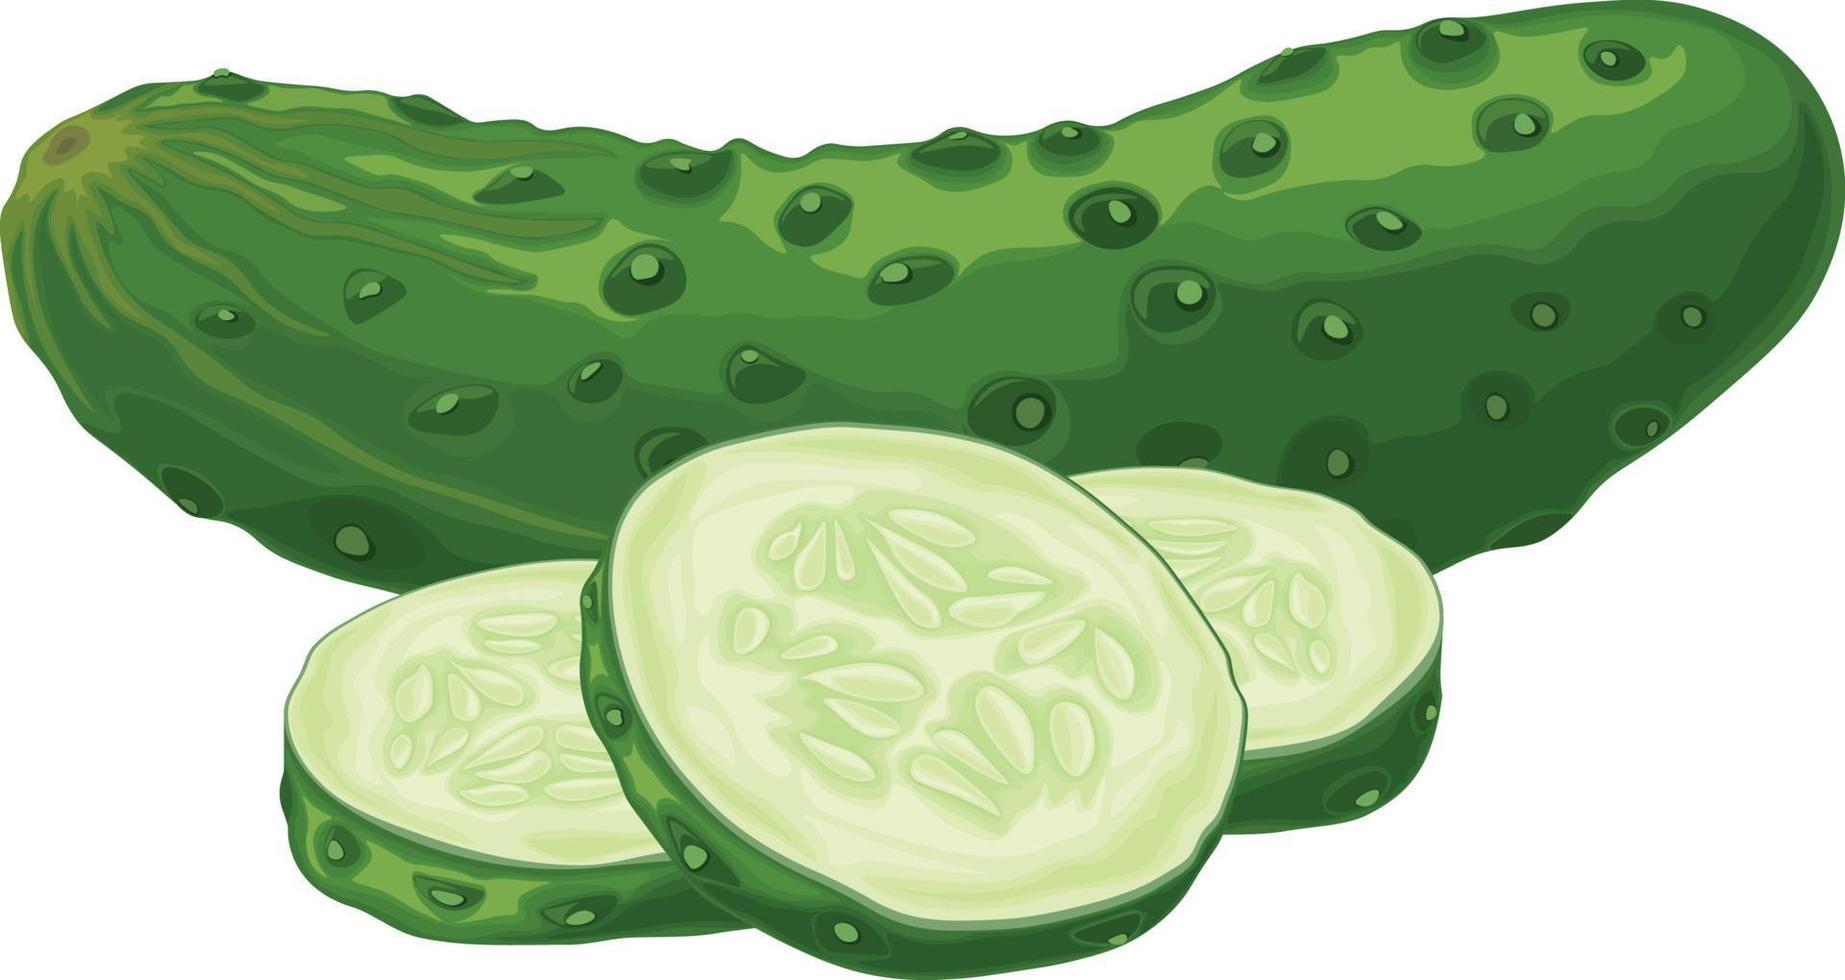 grön gurka. bild av en mogen skivad grön gurka. grön vegetarian produkt. vektor illustration isolerat på en vit bakgrund